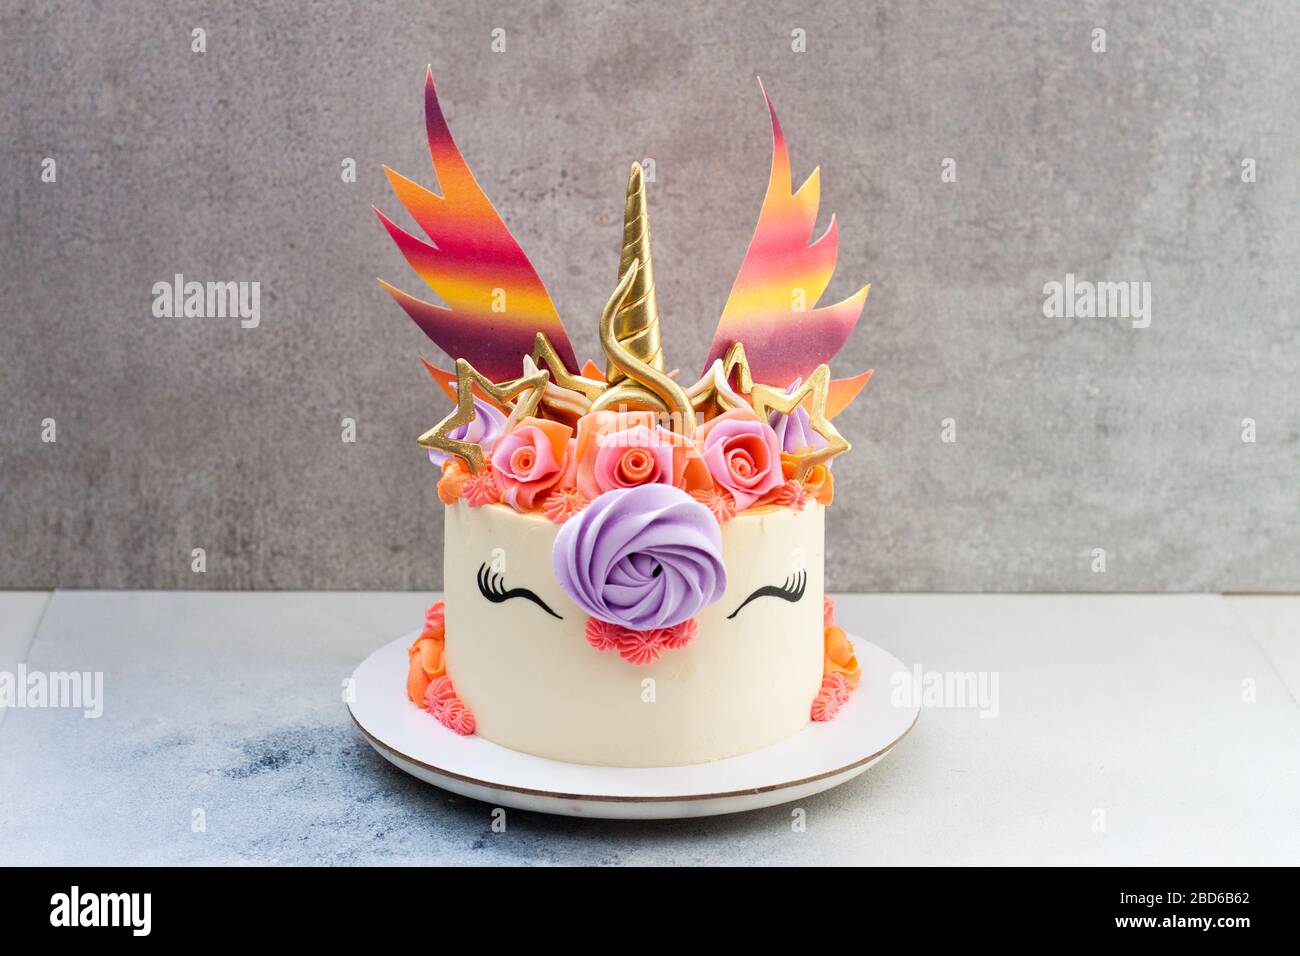 Gâteau unicorn coloré et lumineux avec corne et oreilles dorées, ailes  arc-en-ciel, roses et décor crème fouettée. Fond gris Photo Stock - Alamy